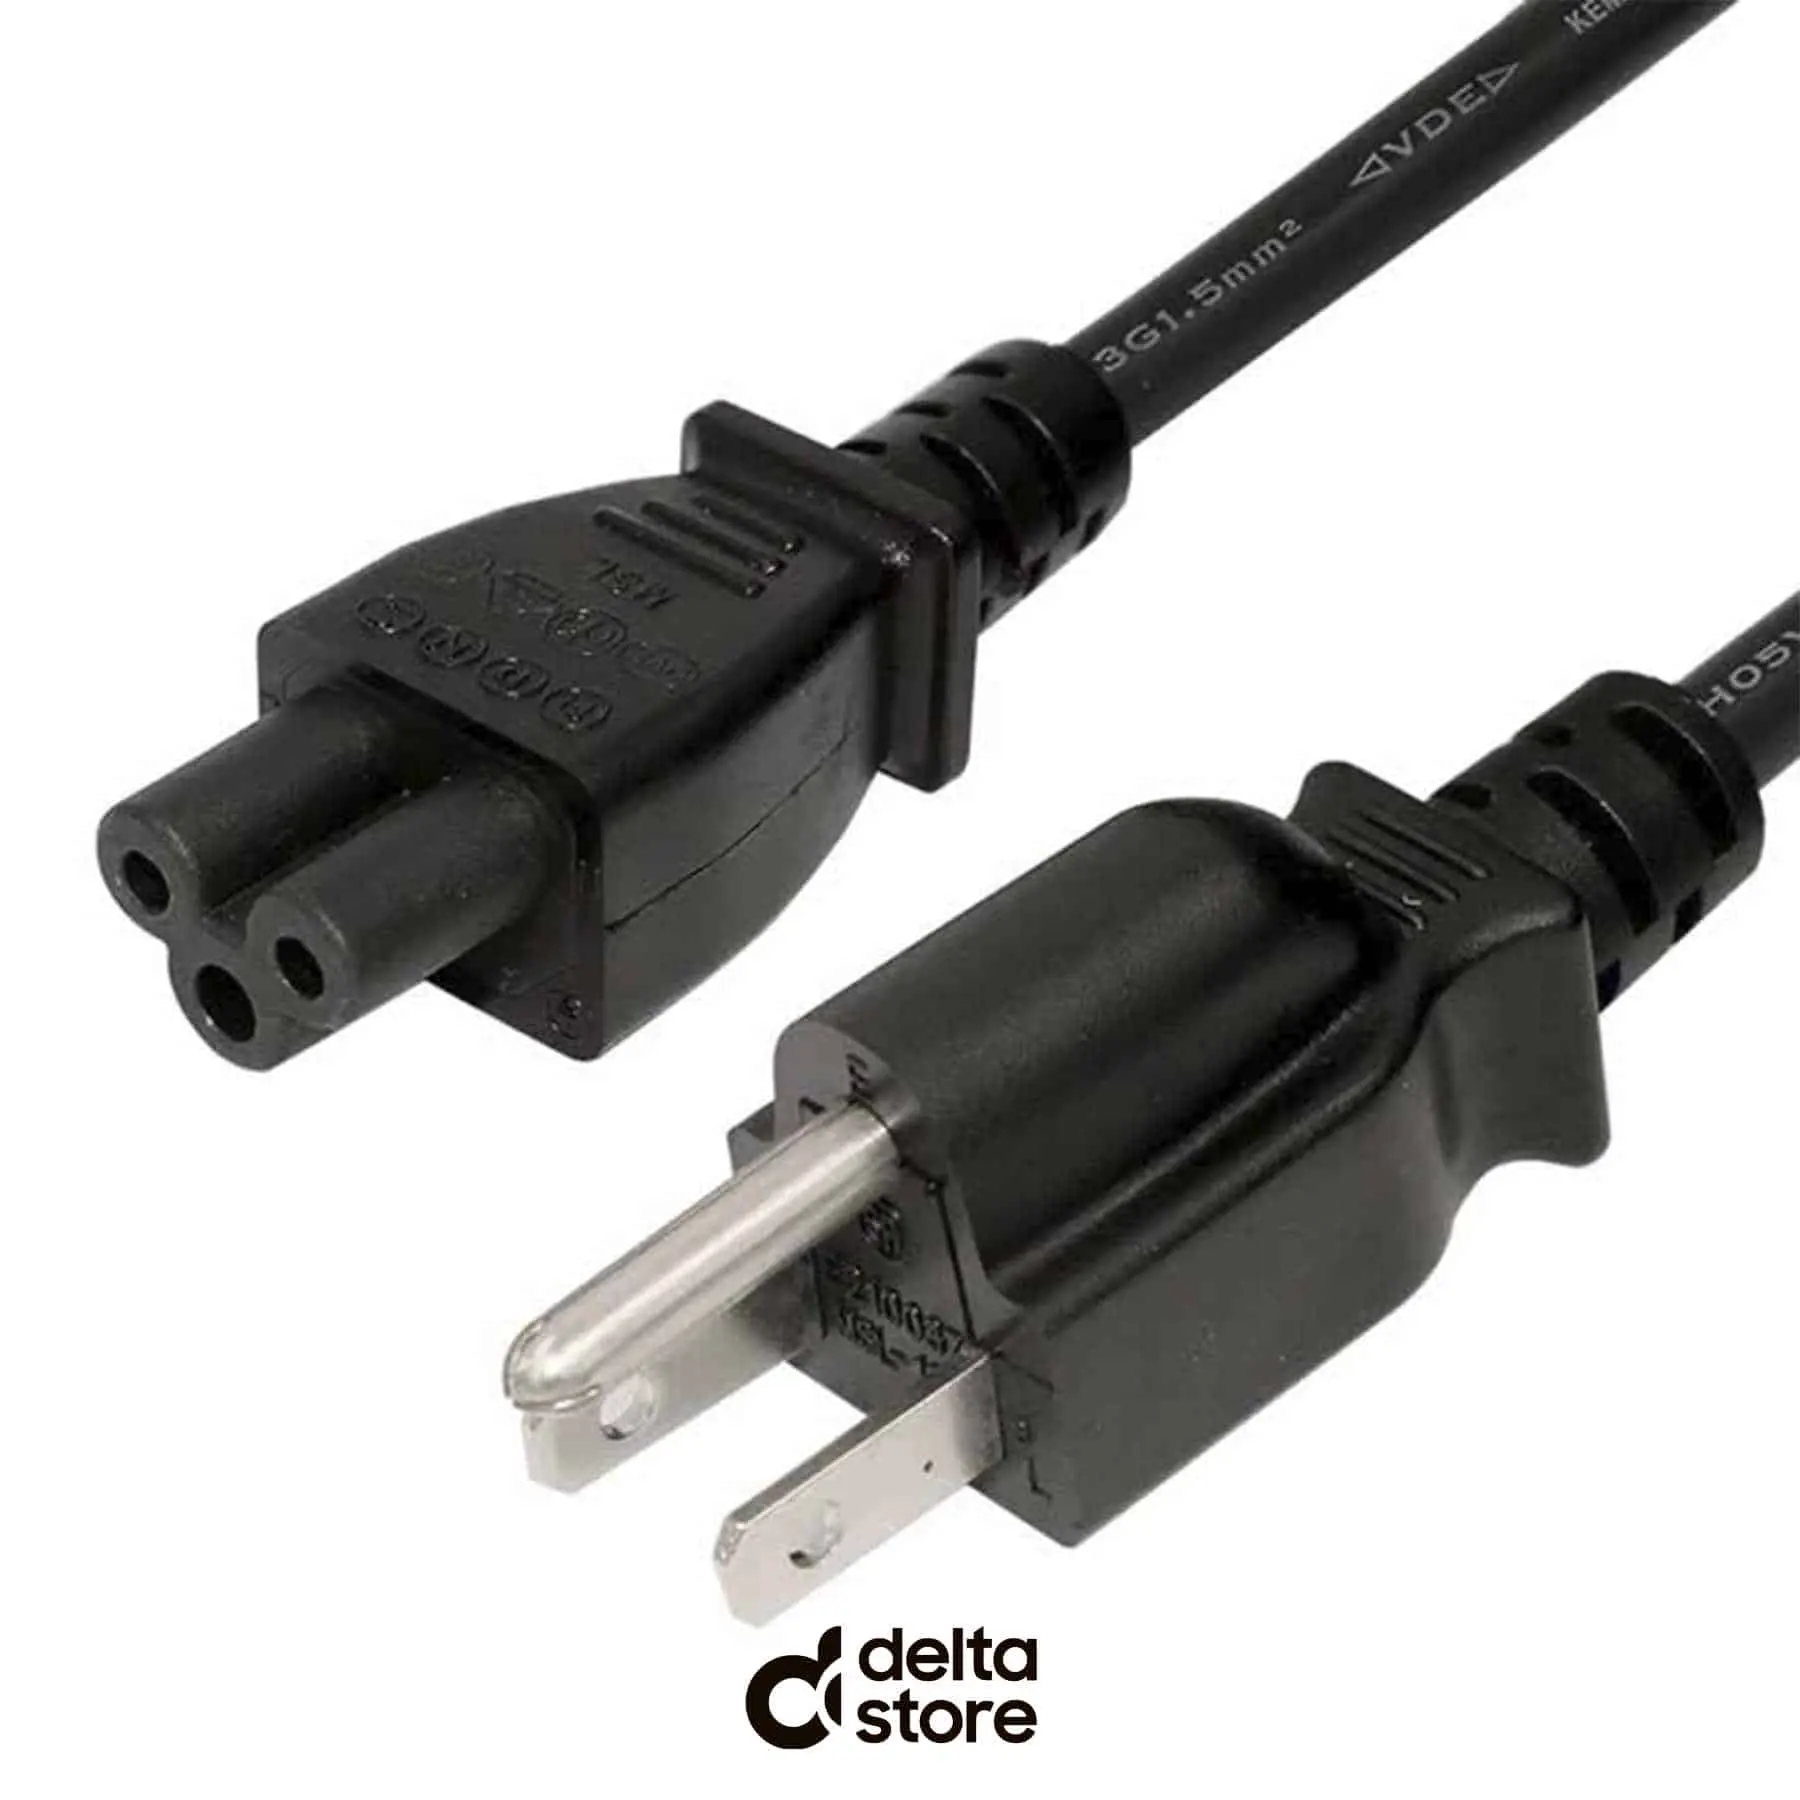 Noutbuk Power Kabel 3-Pin 1.5 Metr